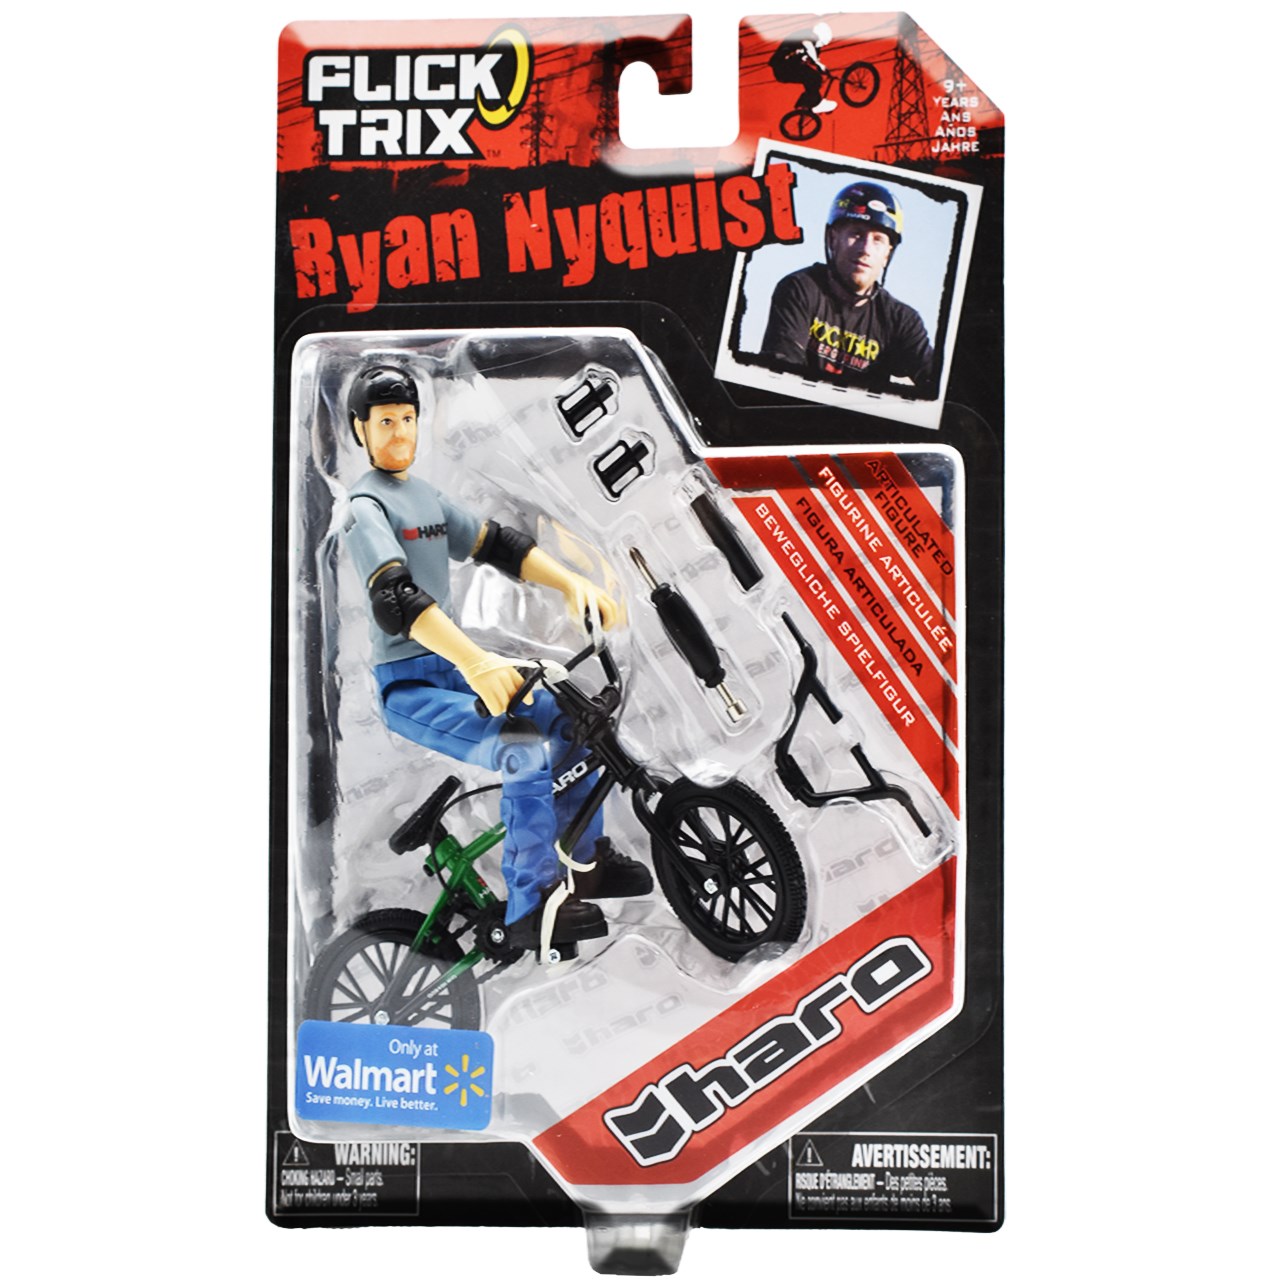 دوچرخه فلیک تریکس  مدل Ryan Nyquist